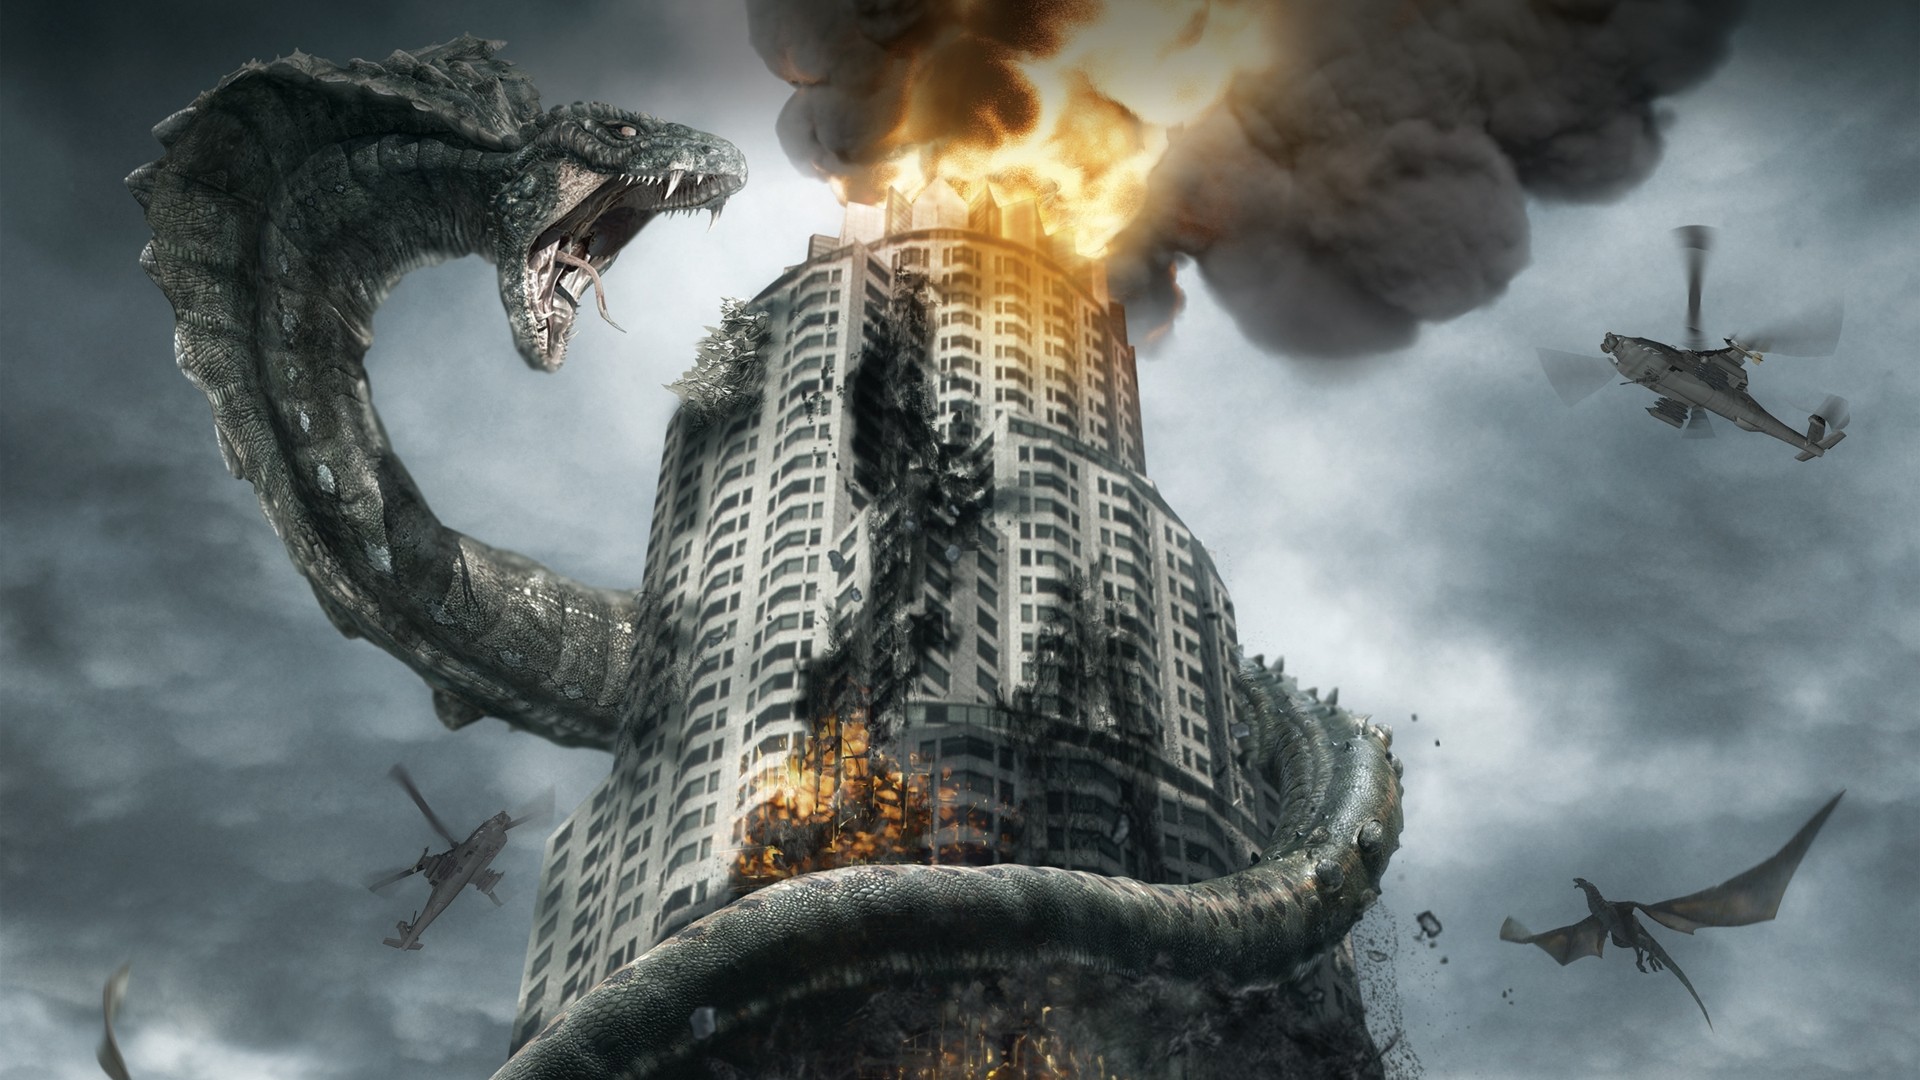 3d обои Огромная змея напала на небоскрёб  змеи # 41140